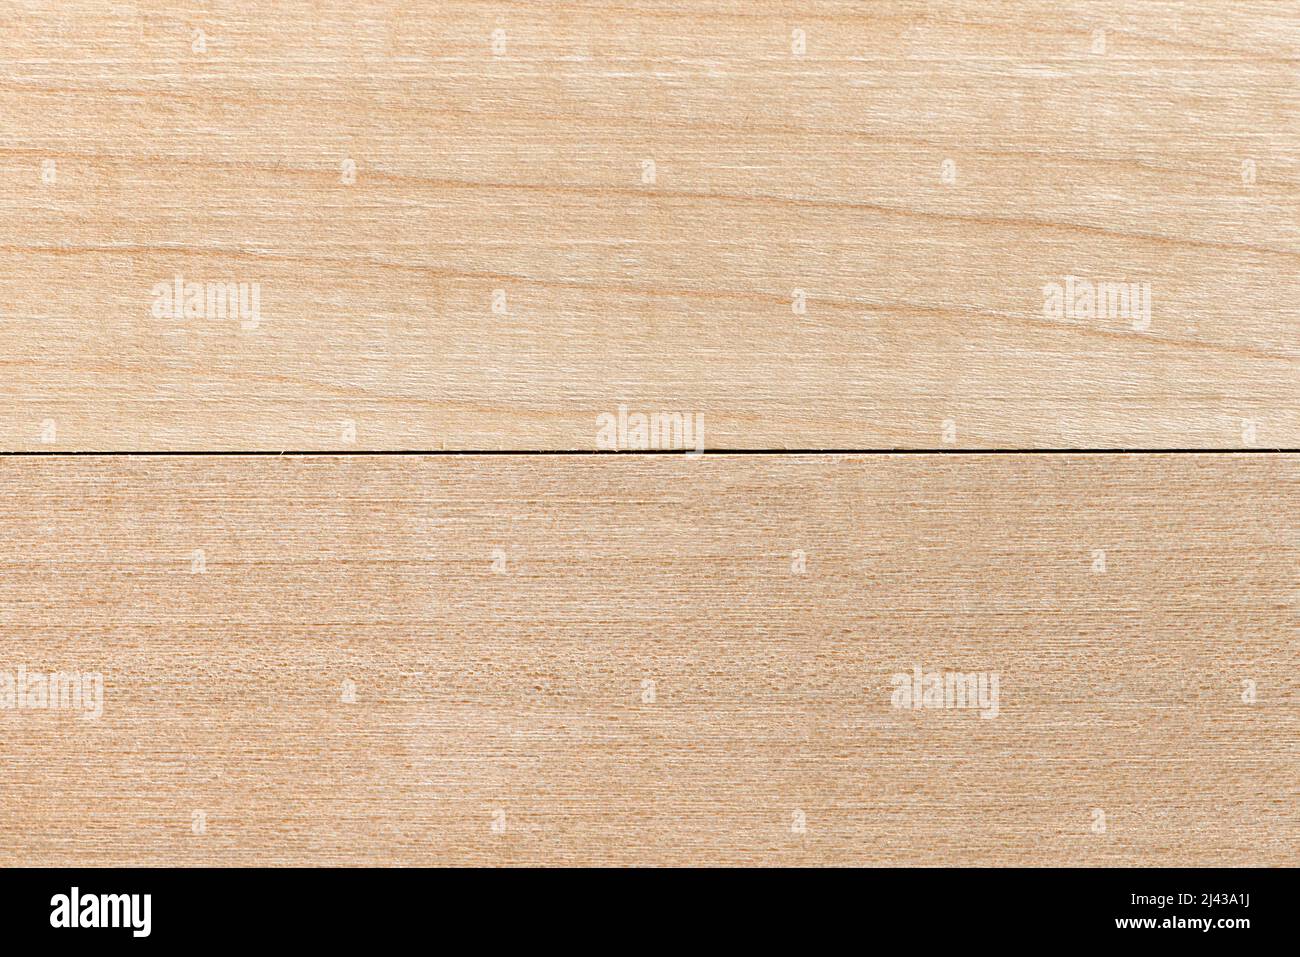 Die Textur eines Holzbretts. Hintergrund und Textur von hellem Holz. Nahaufnahme aus natürlichem Birkenholz. Unbemalter Fußboden in natürlichen Farbtönen Stockfoto